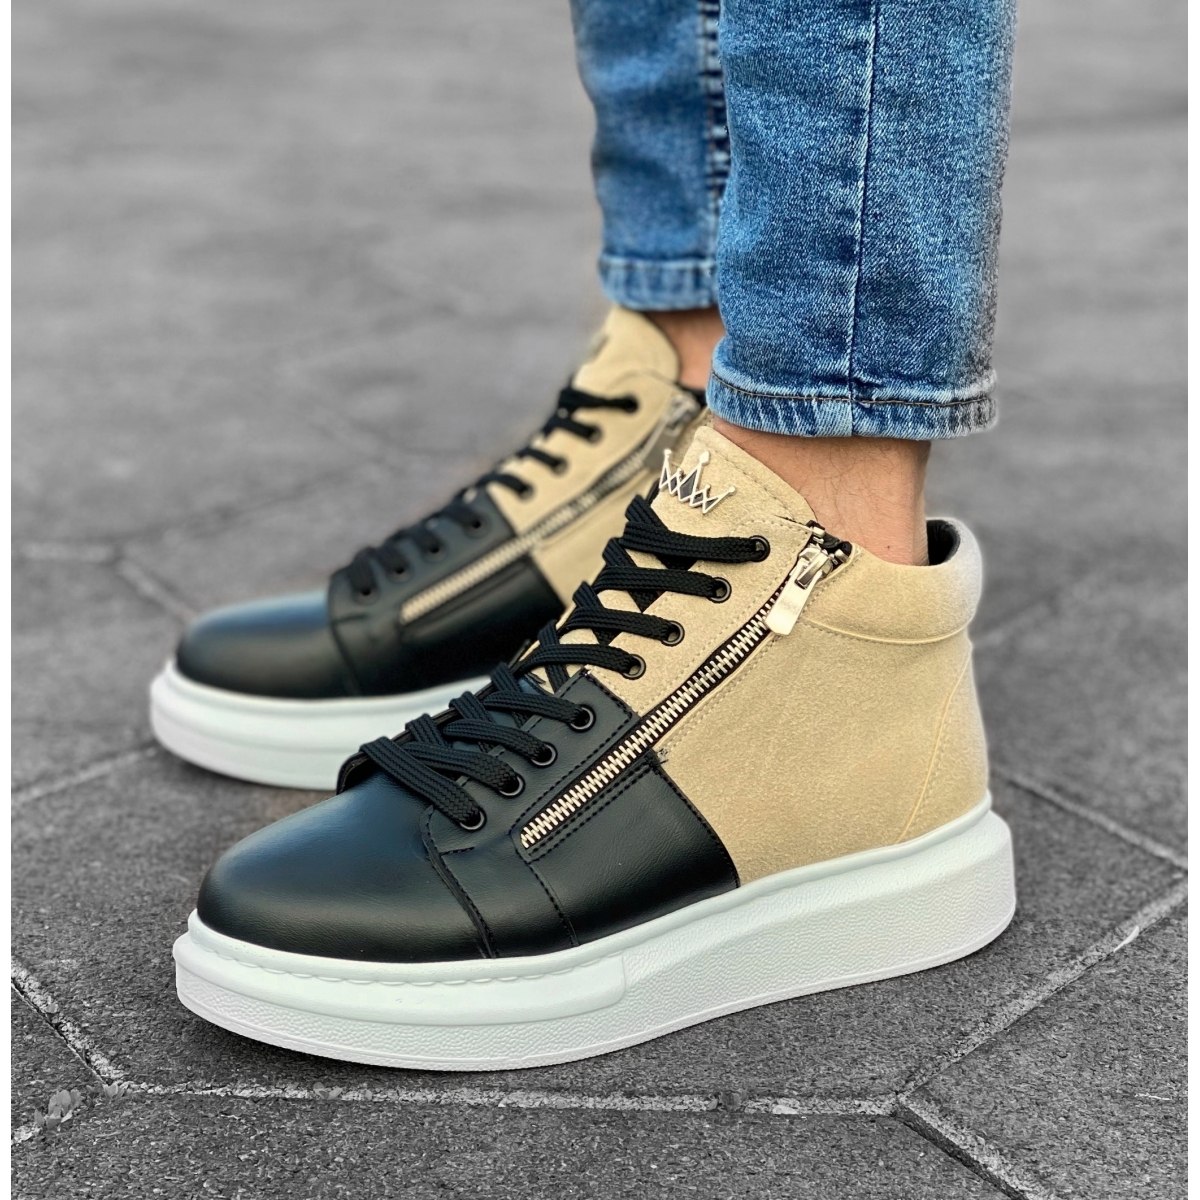 Herren High Top Sneakers Designer Schuhe mit Reissverschluss in creme-schwarz - 4